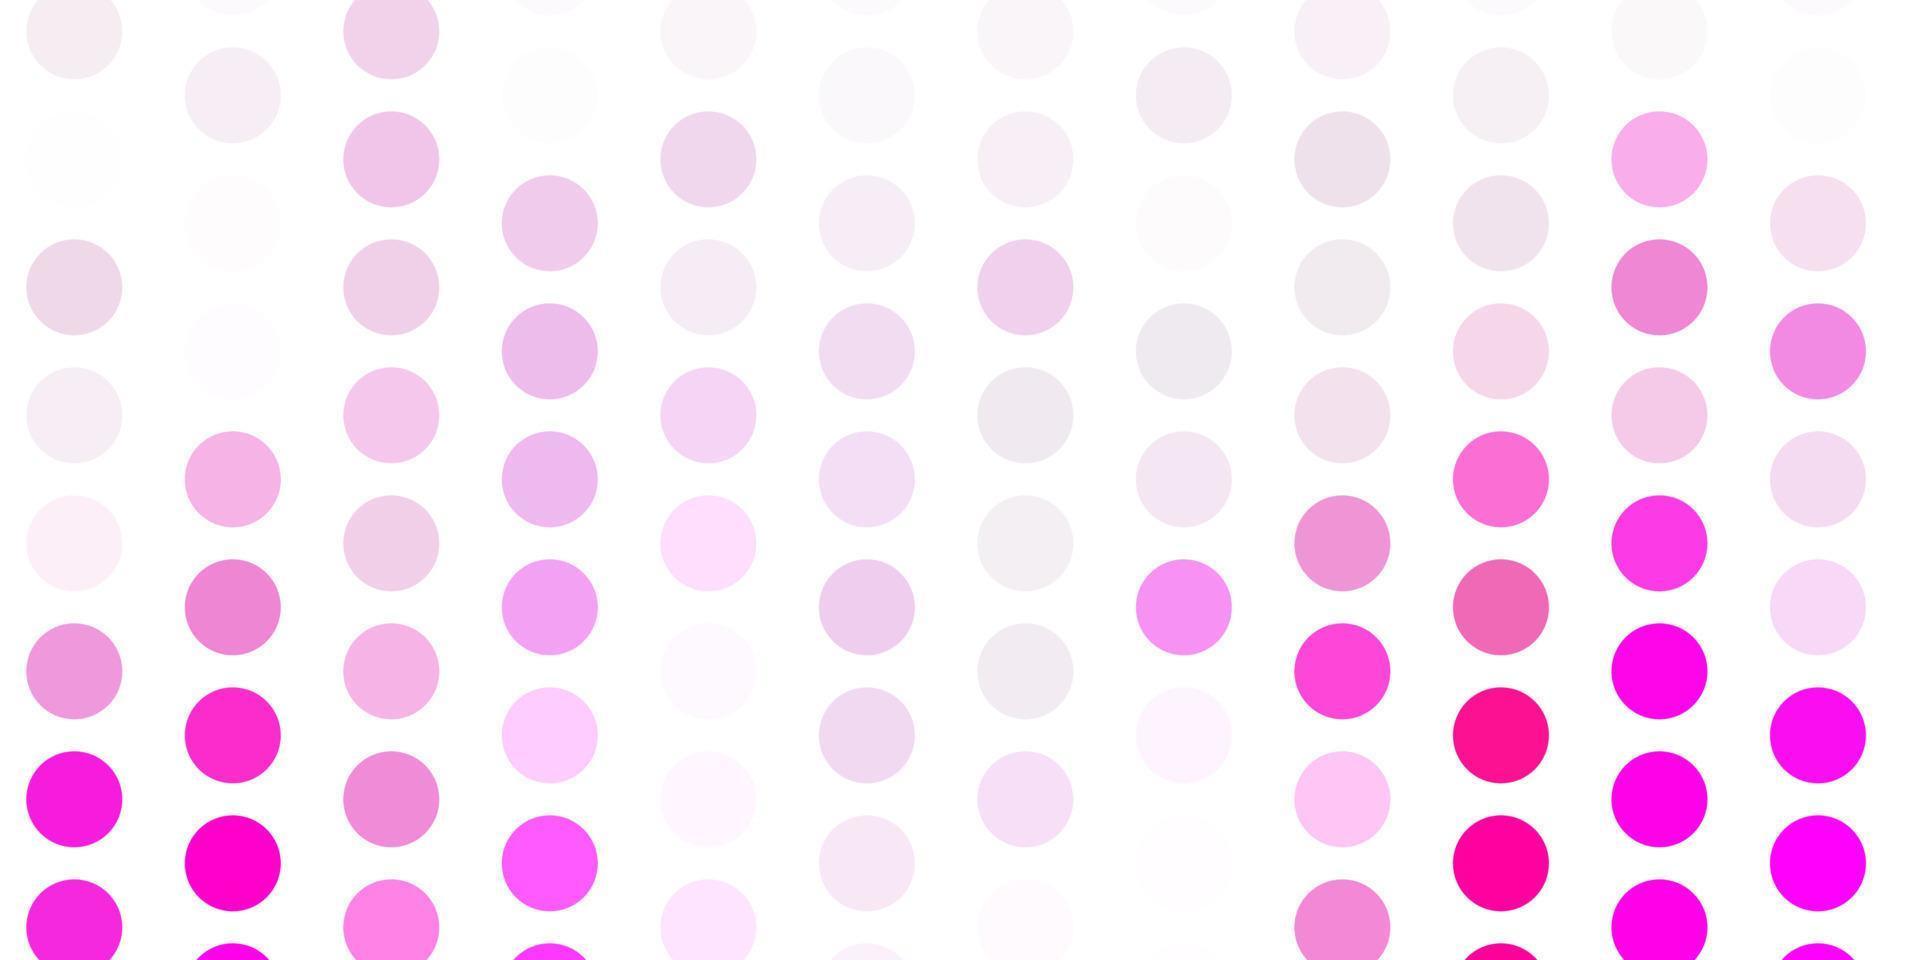 modello vettoriale rosa chiaro con cerchi.